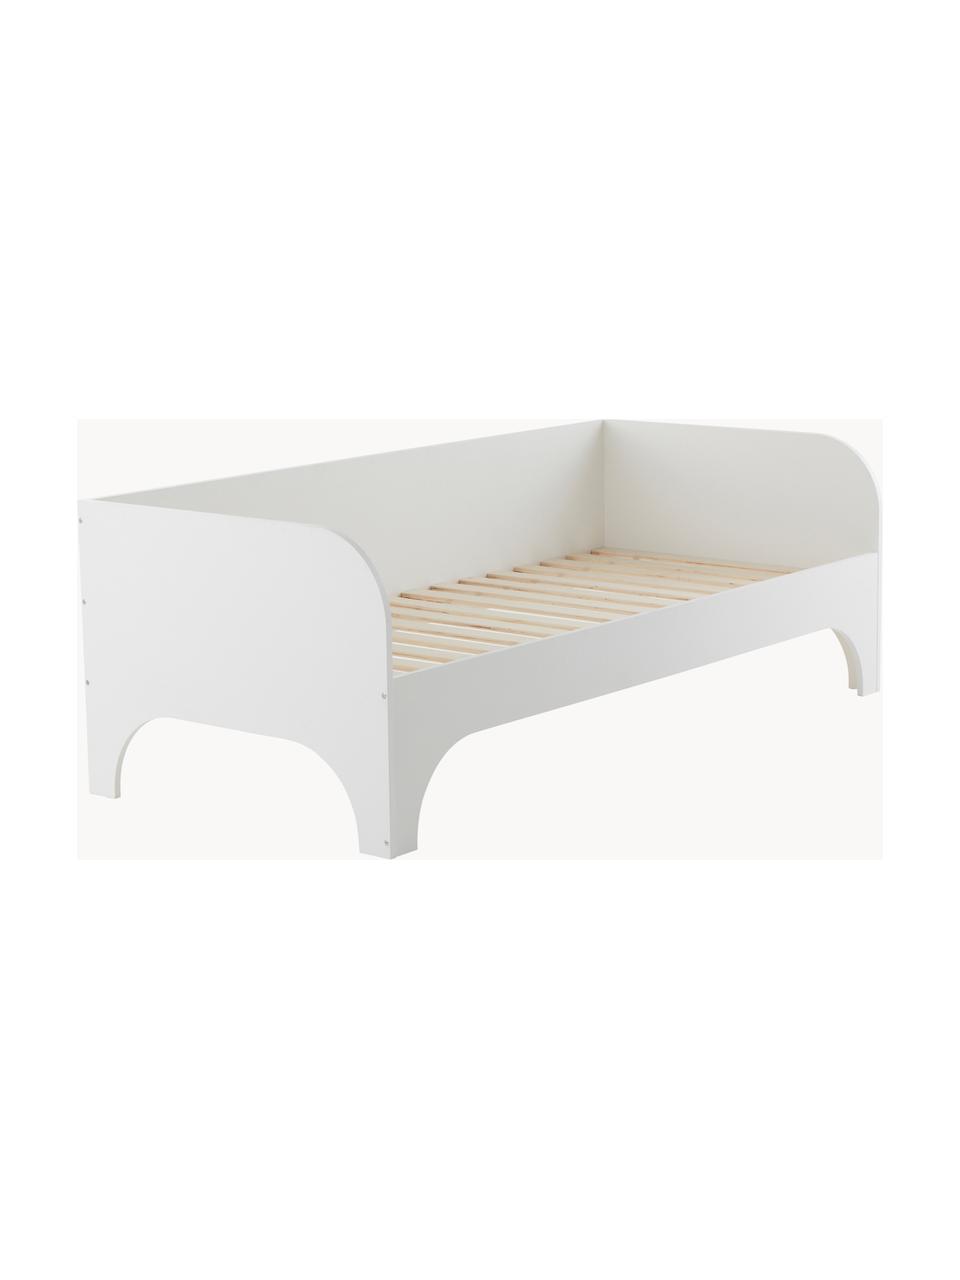 Drevená detská posteľ Phant, 90 x 200 cm, Drevovláknitá doska strednej hustoty (MDF), Drevo, biela lakovaná, Š 90 x D 200 cm